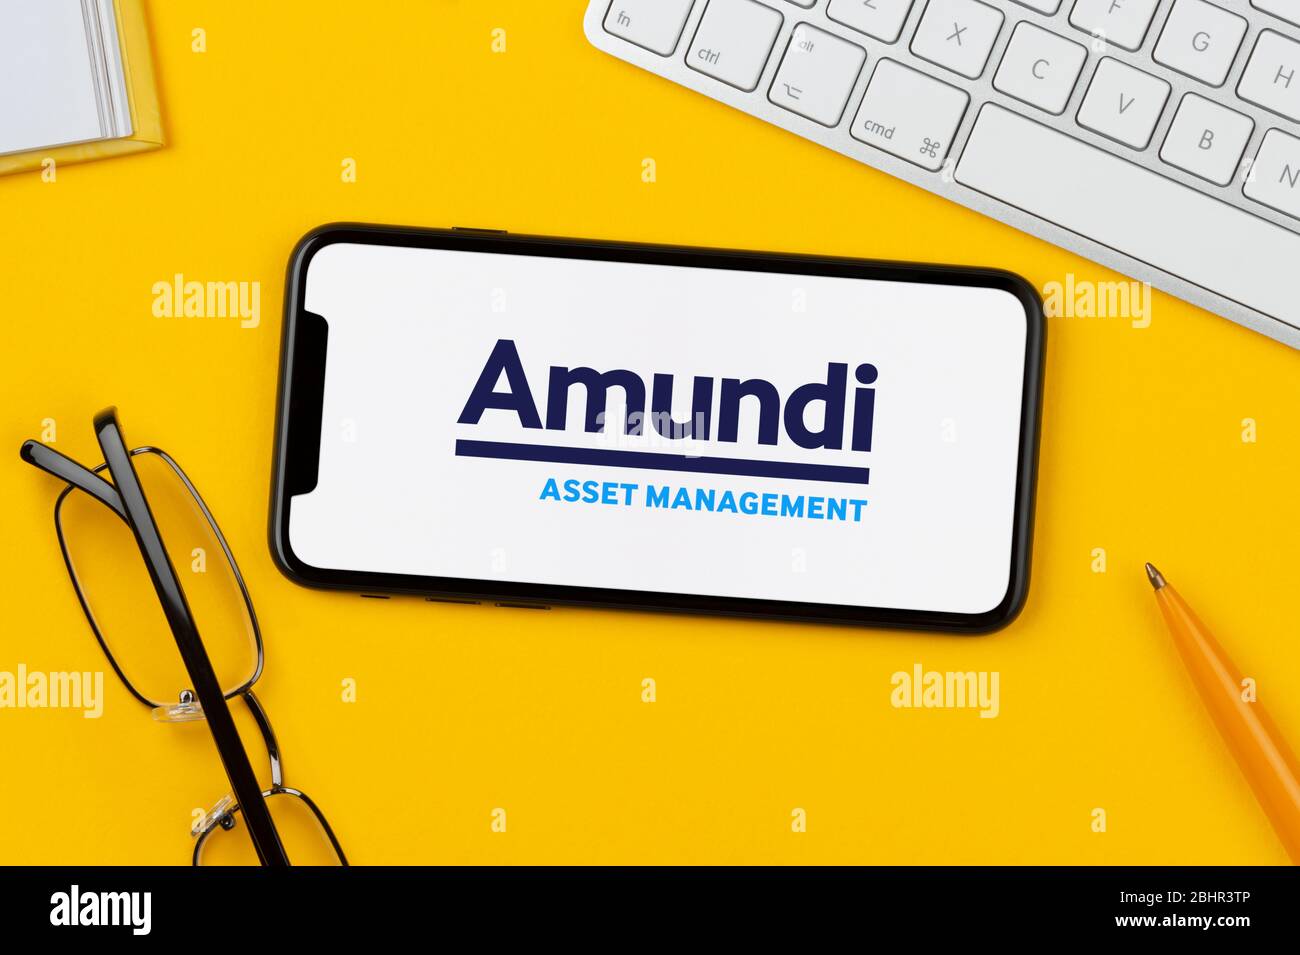 Uno smartphone con il logo Amundi Asset Management è posizionato su uno sfondo giallo insieme a tastiera, occhiali, penna e libro (solo per uso editoriale). Foto Stock